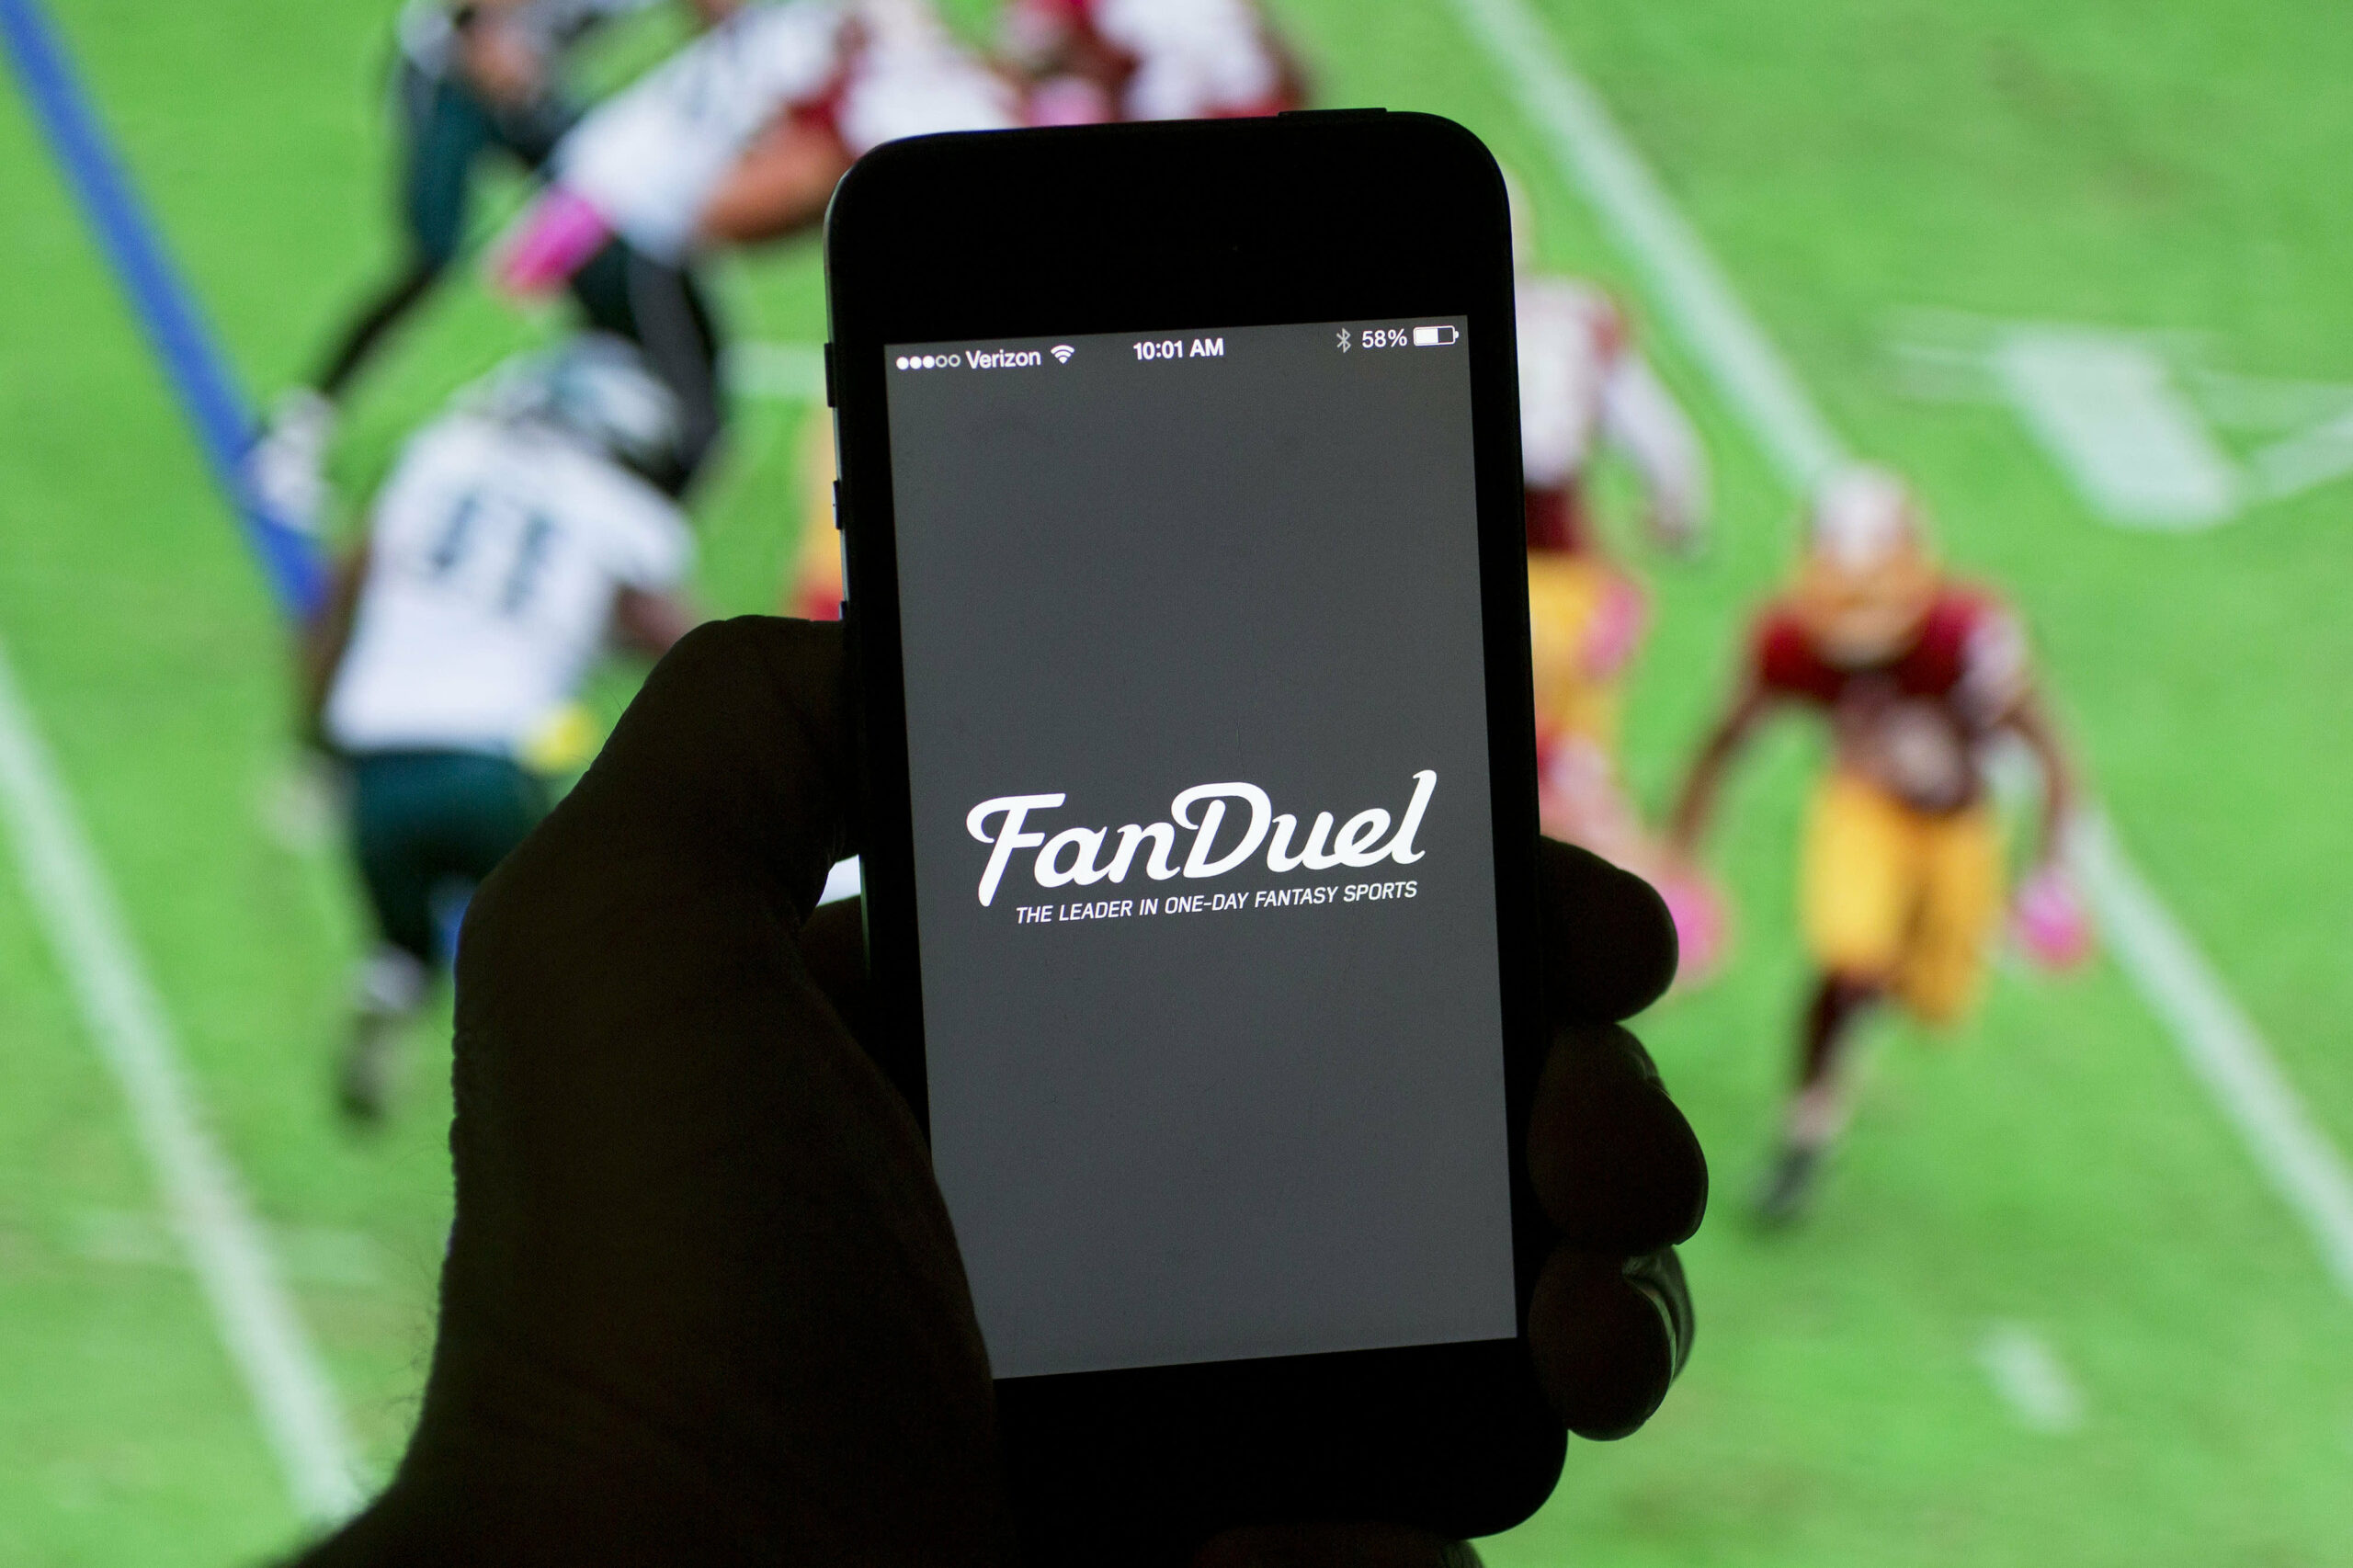 Tech, gambling, alcohol helped NFL earn almost $2 billion in sponsorships